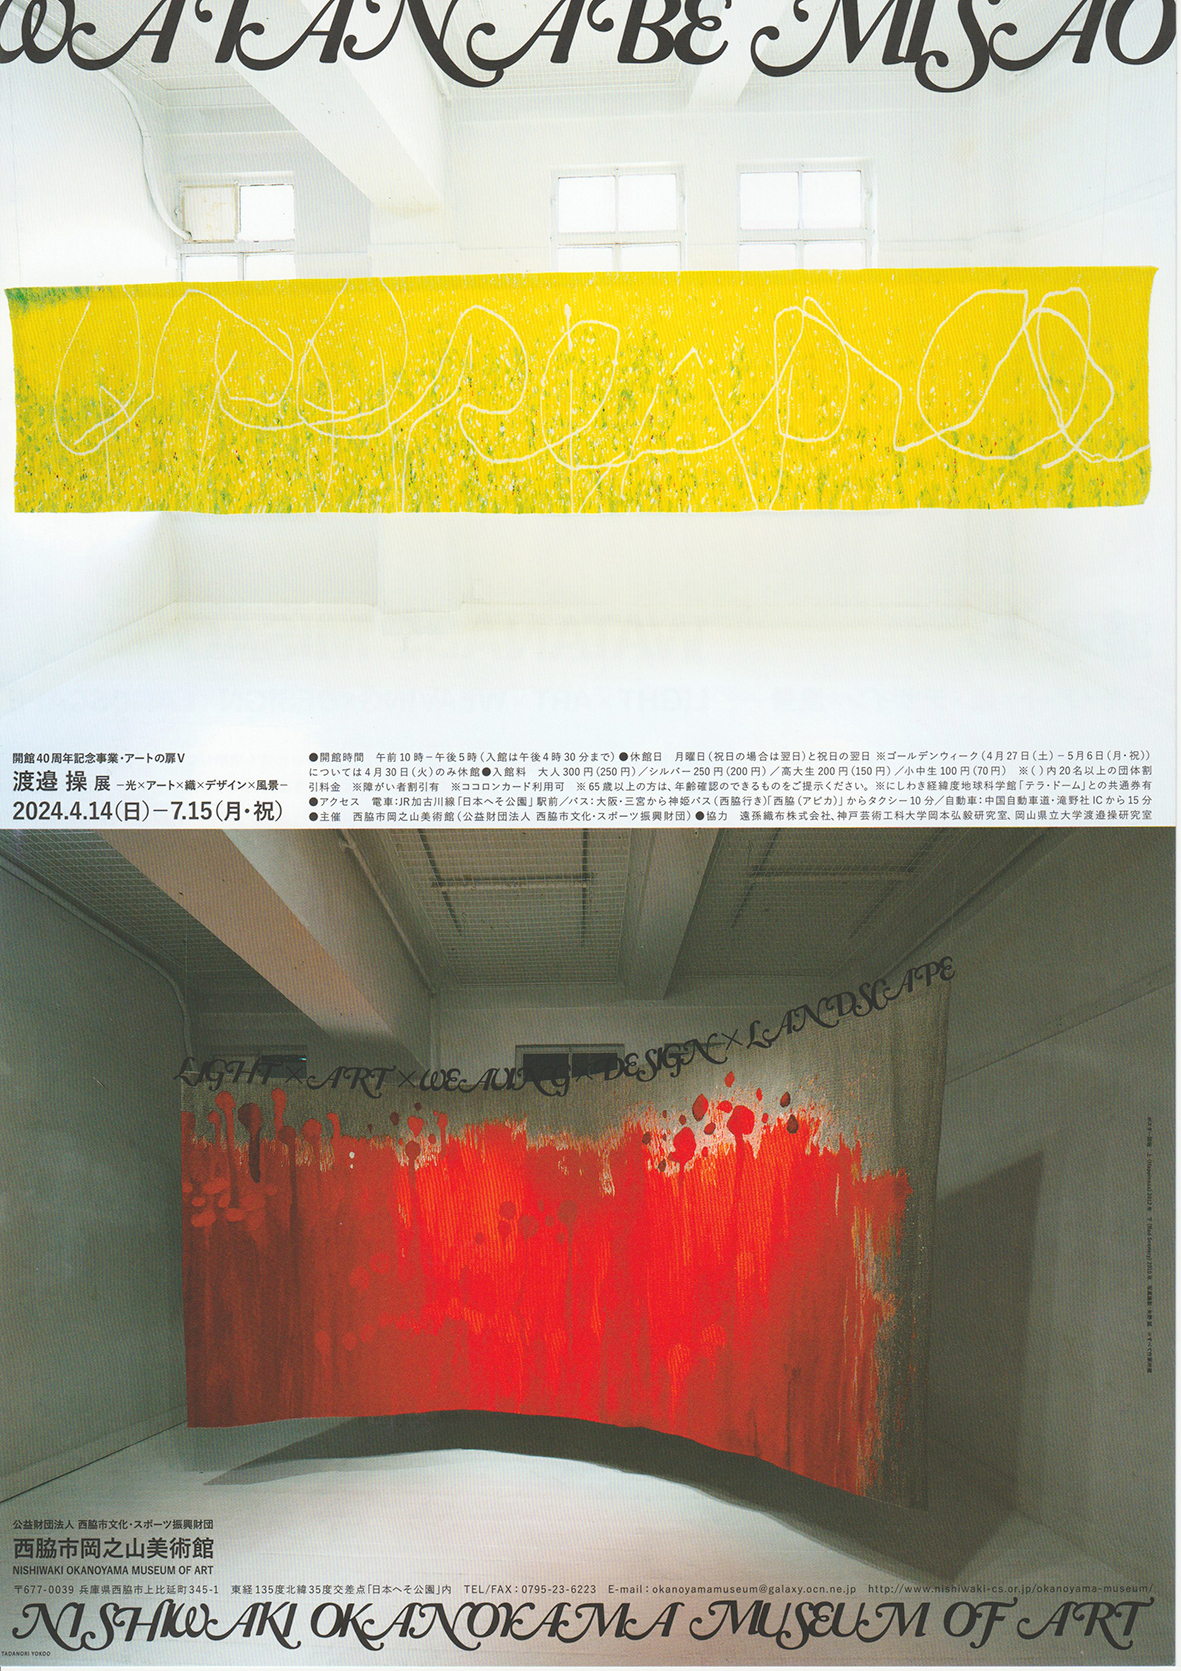 渡邉操准教授（工芸工業デザイン学科）の展覧会が西脇市岡之山美術館で開催されます